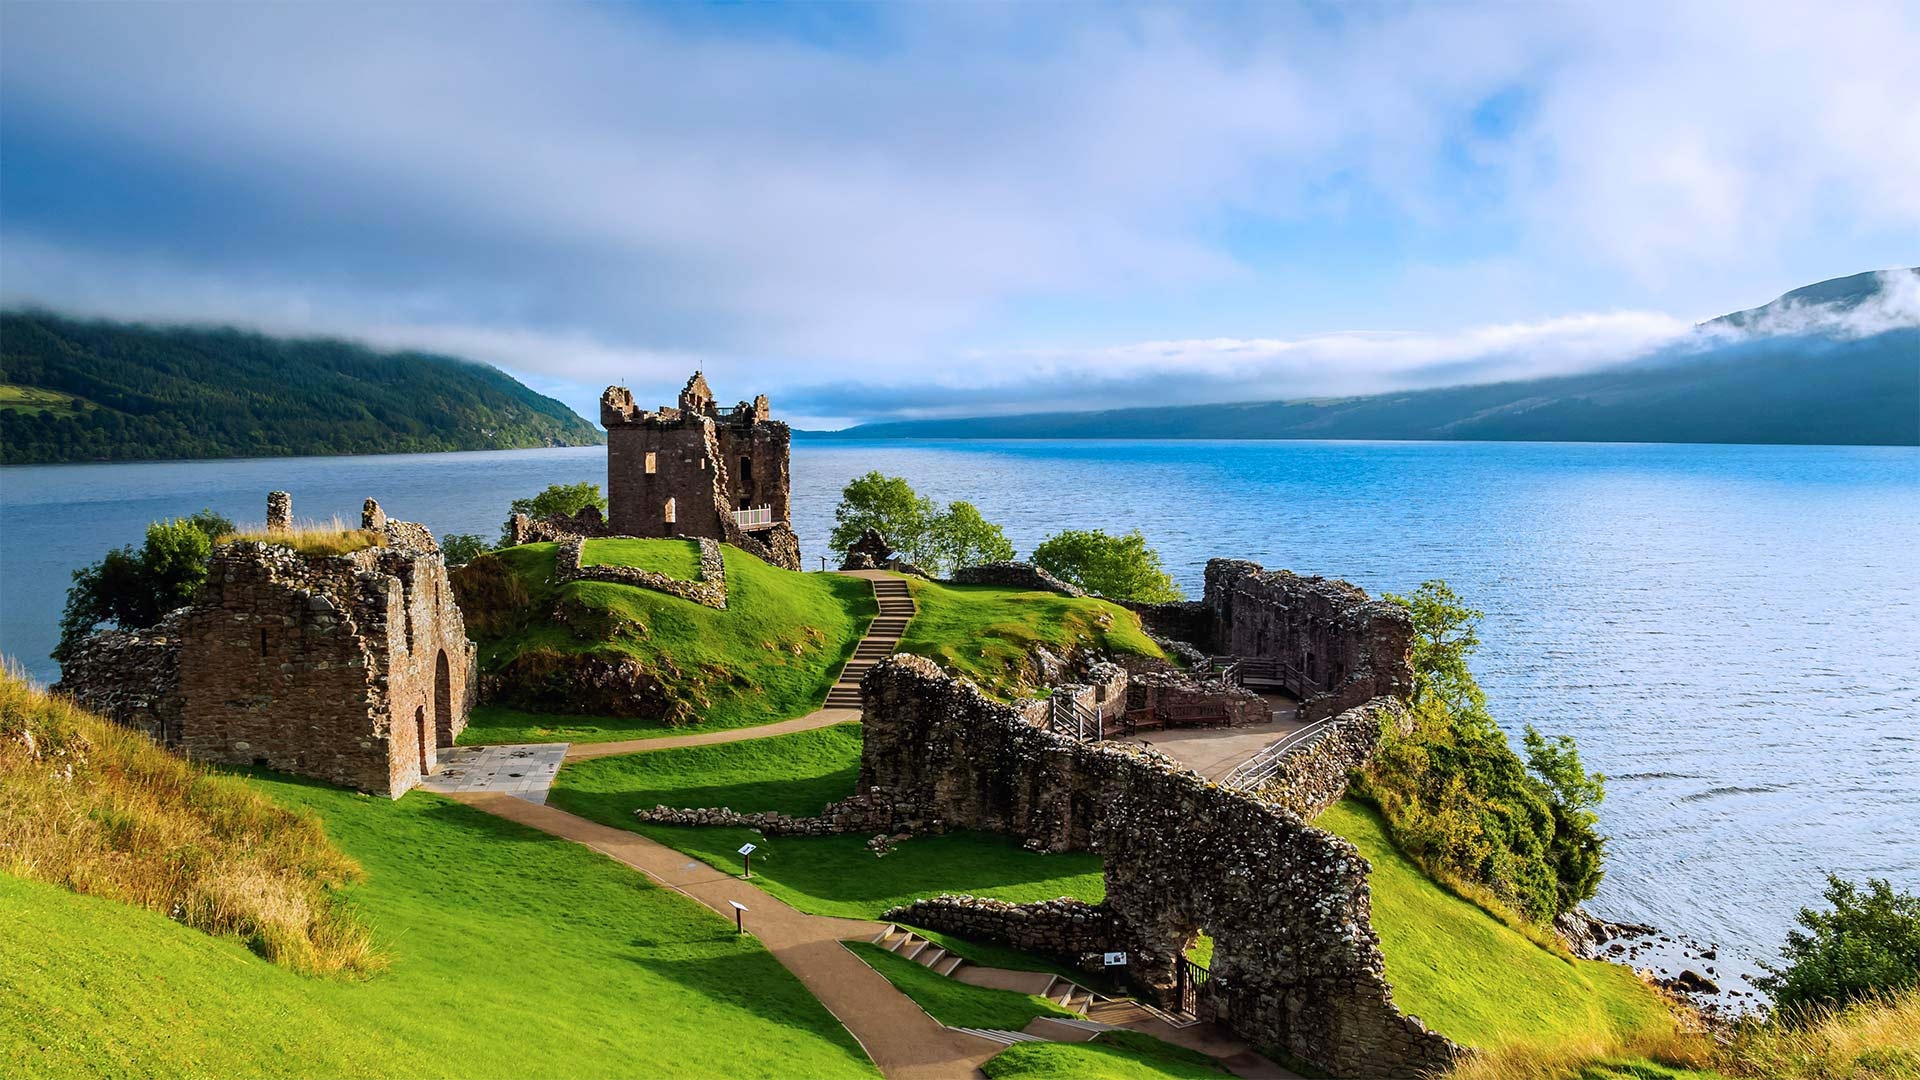 Loch Ness, Urquhart Castle beauty, Loch Ness scenery, Bing image showcase, 1920x1080 Full HD Desktop